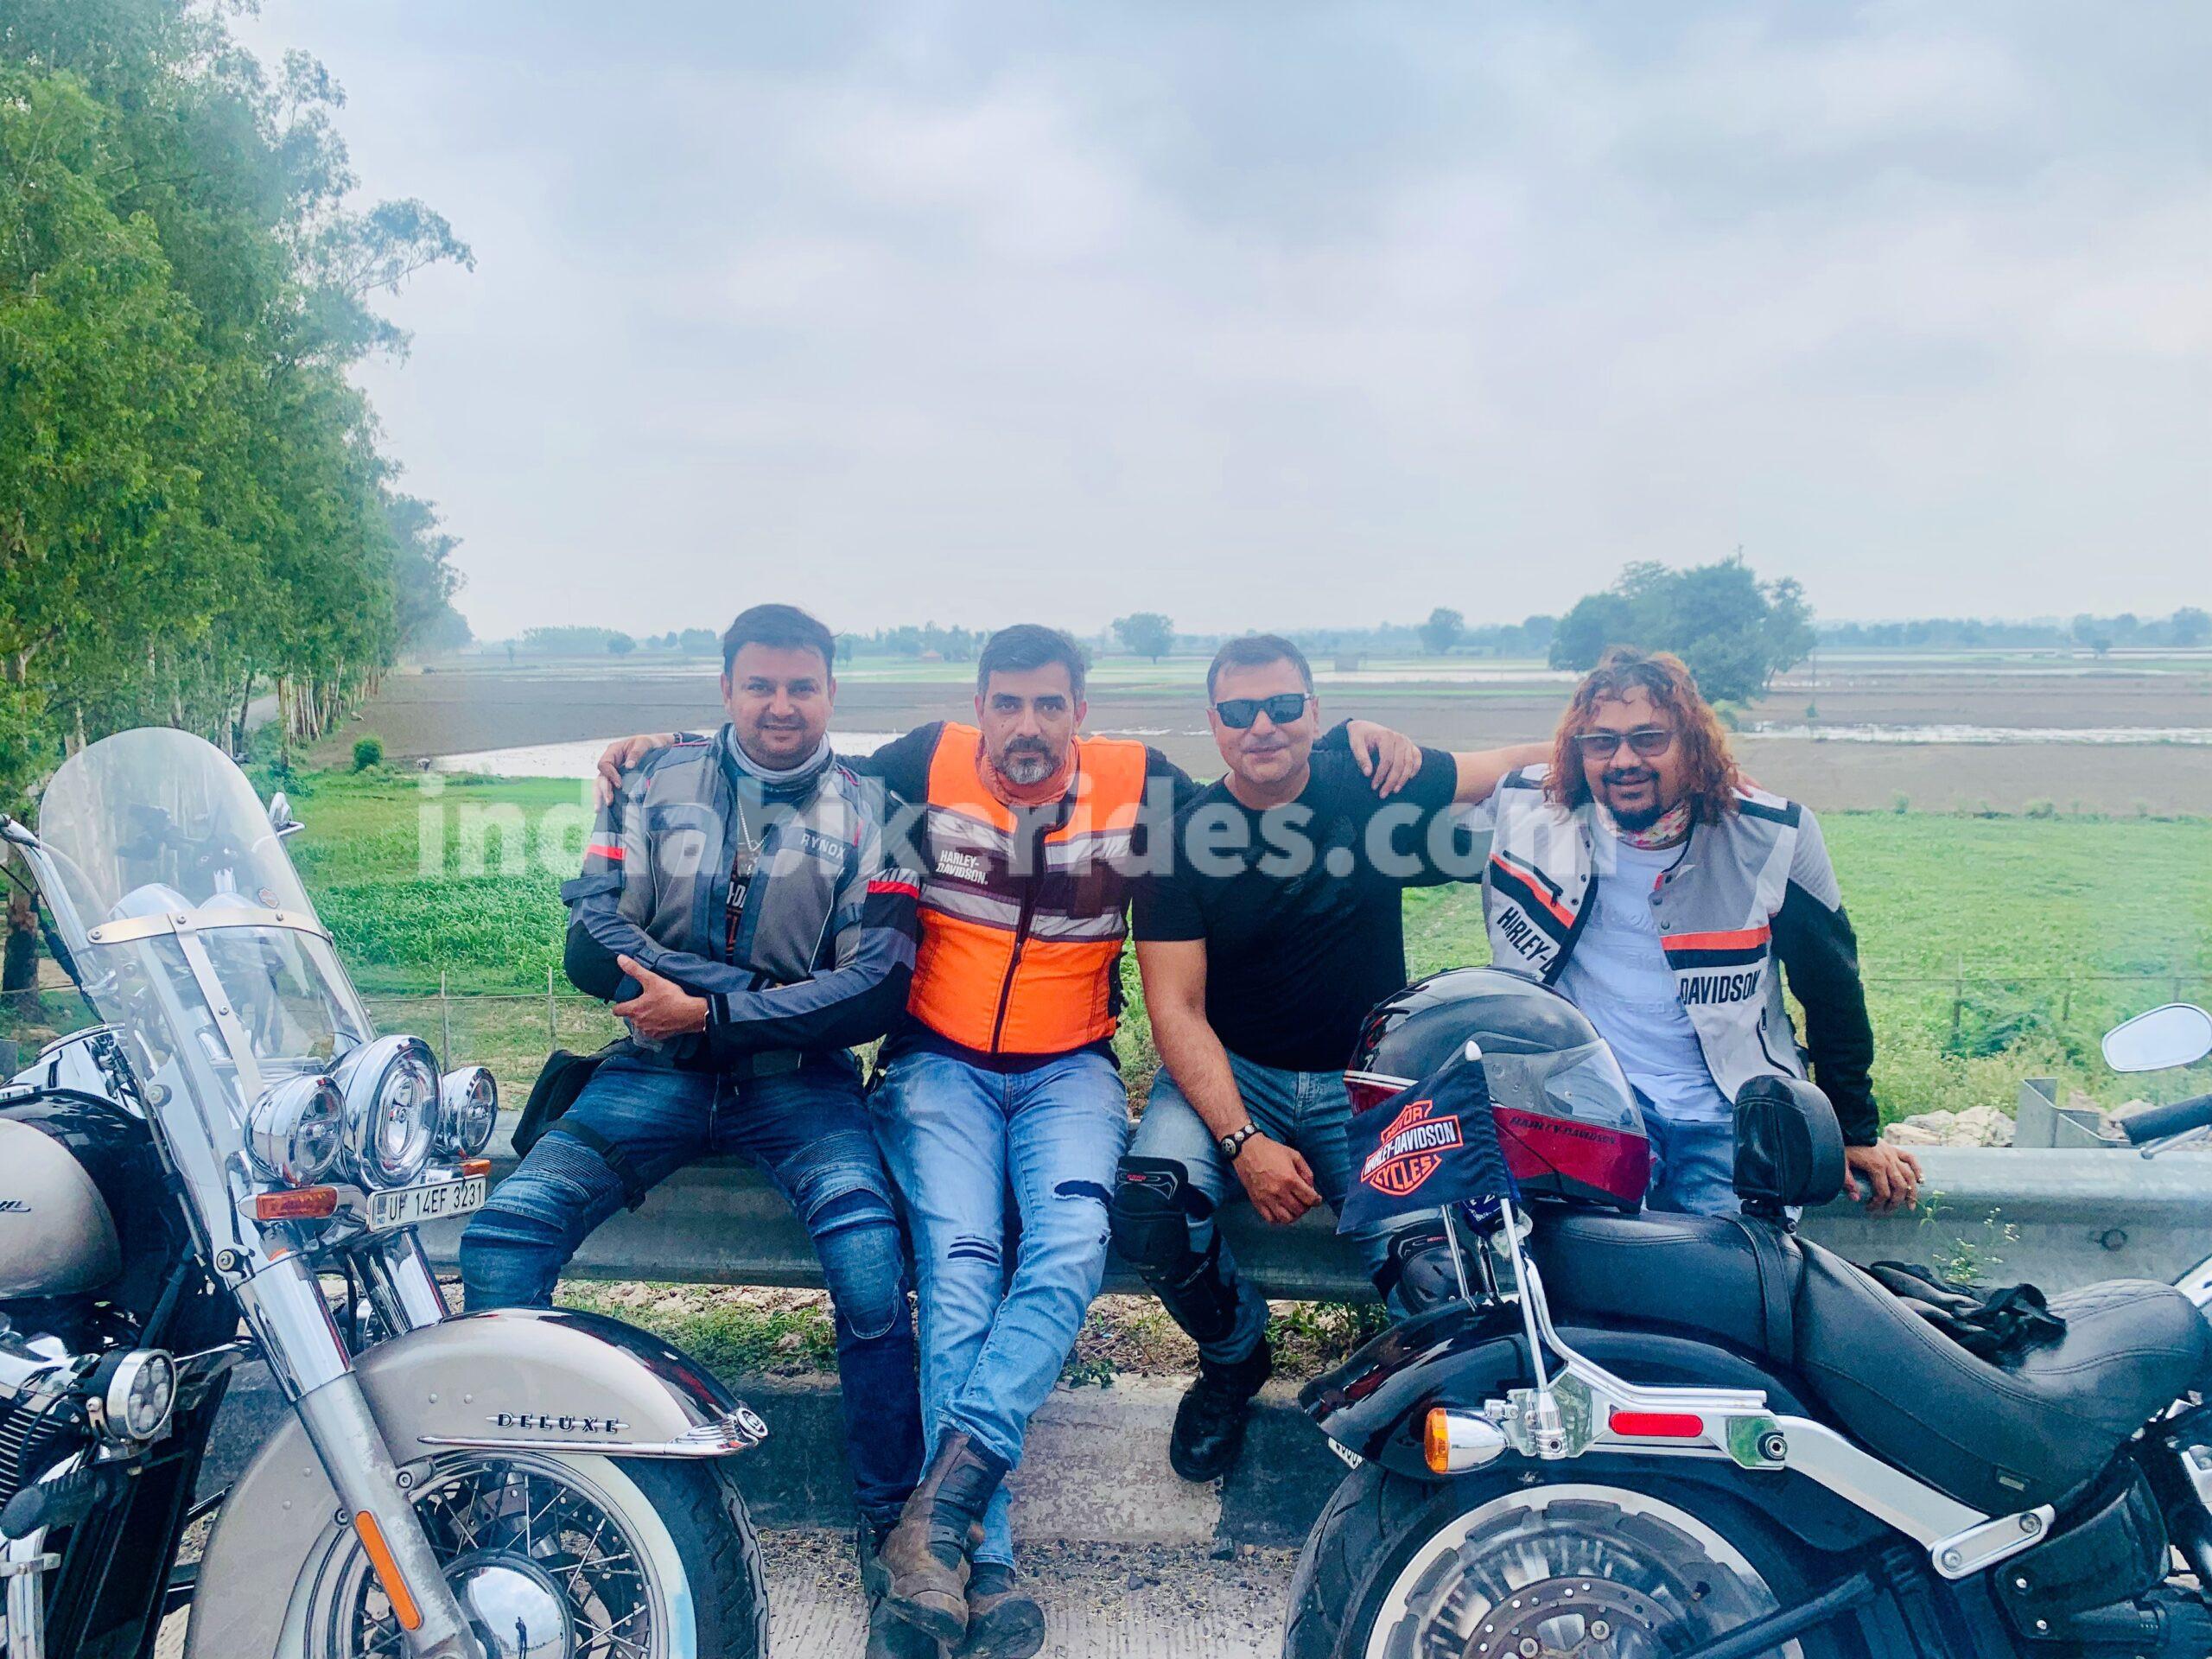 Harley Davidson, Eastern Peripheral,  India Bike rides